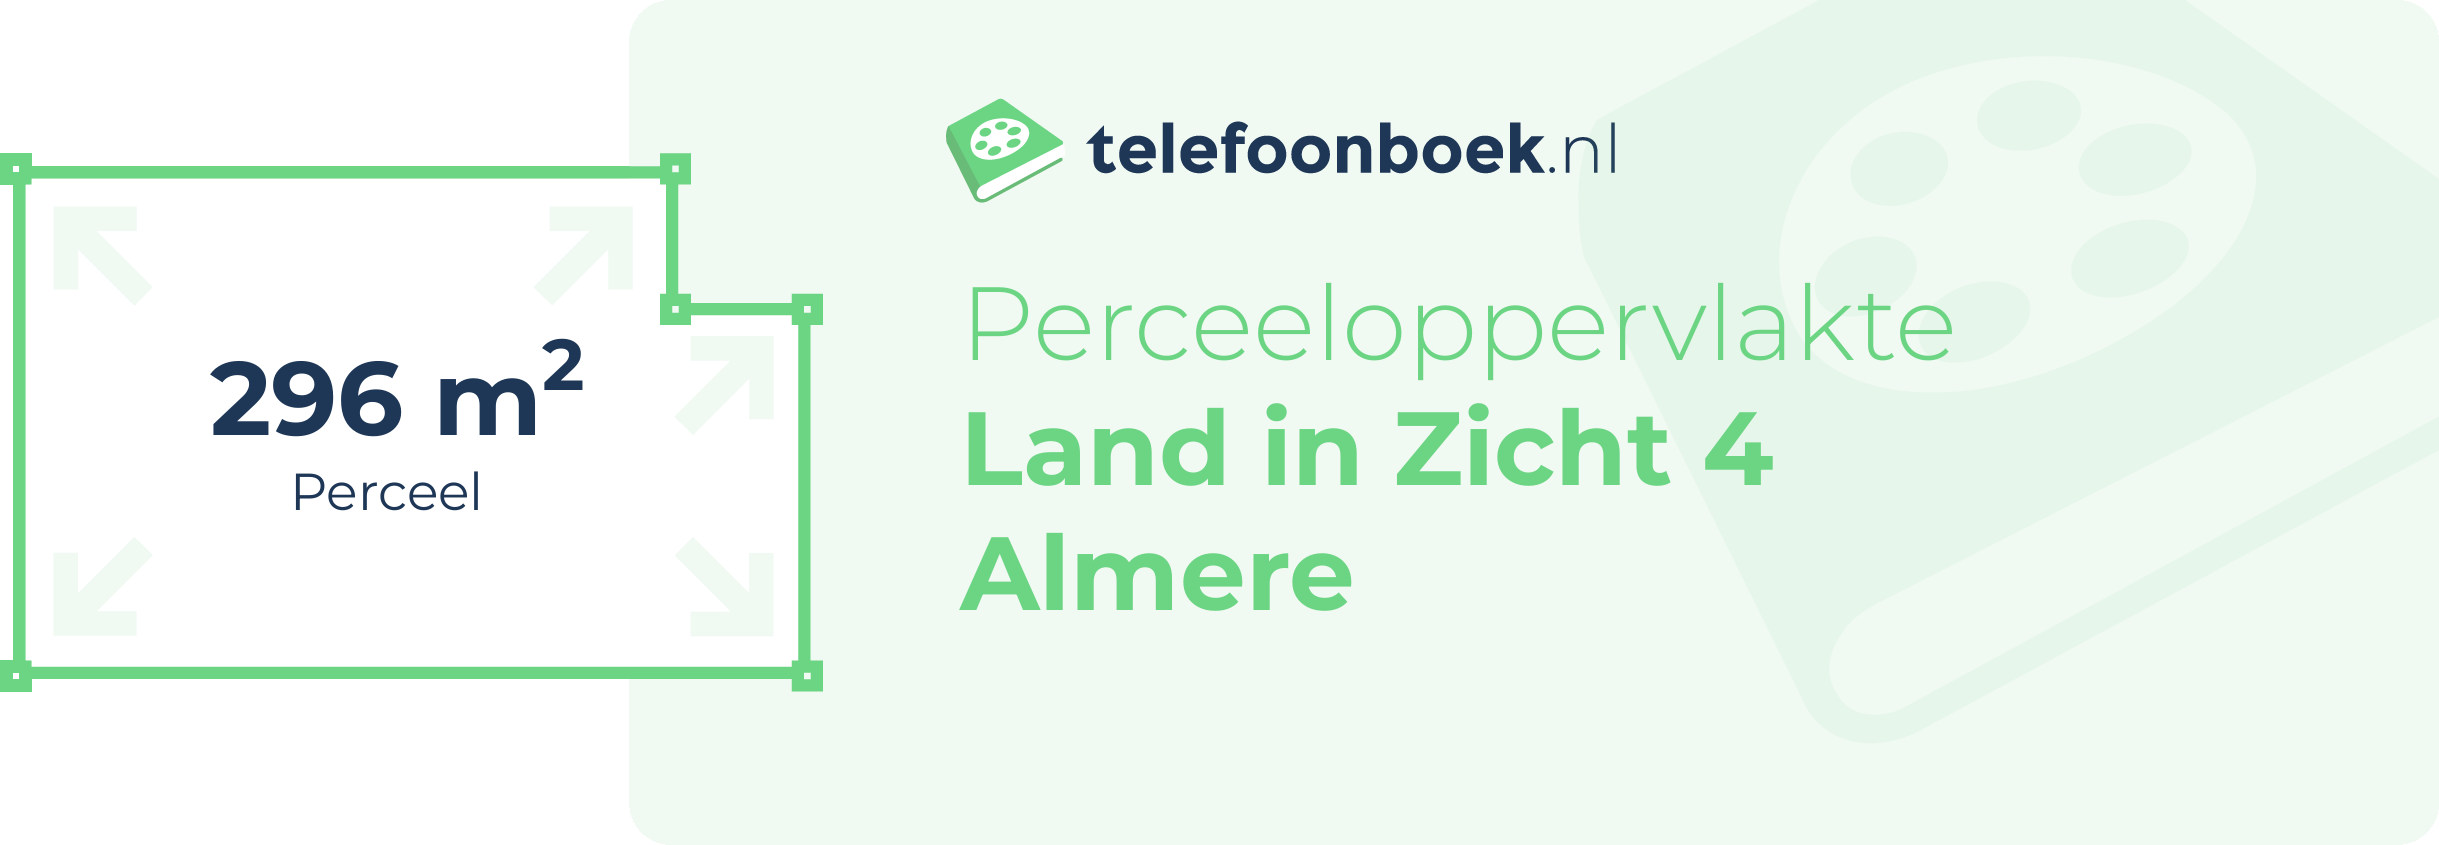 Perceeloppervlakte Land In Zicht 4 Almere